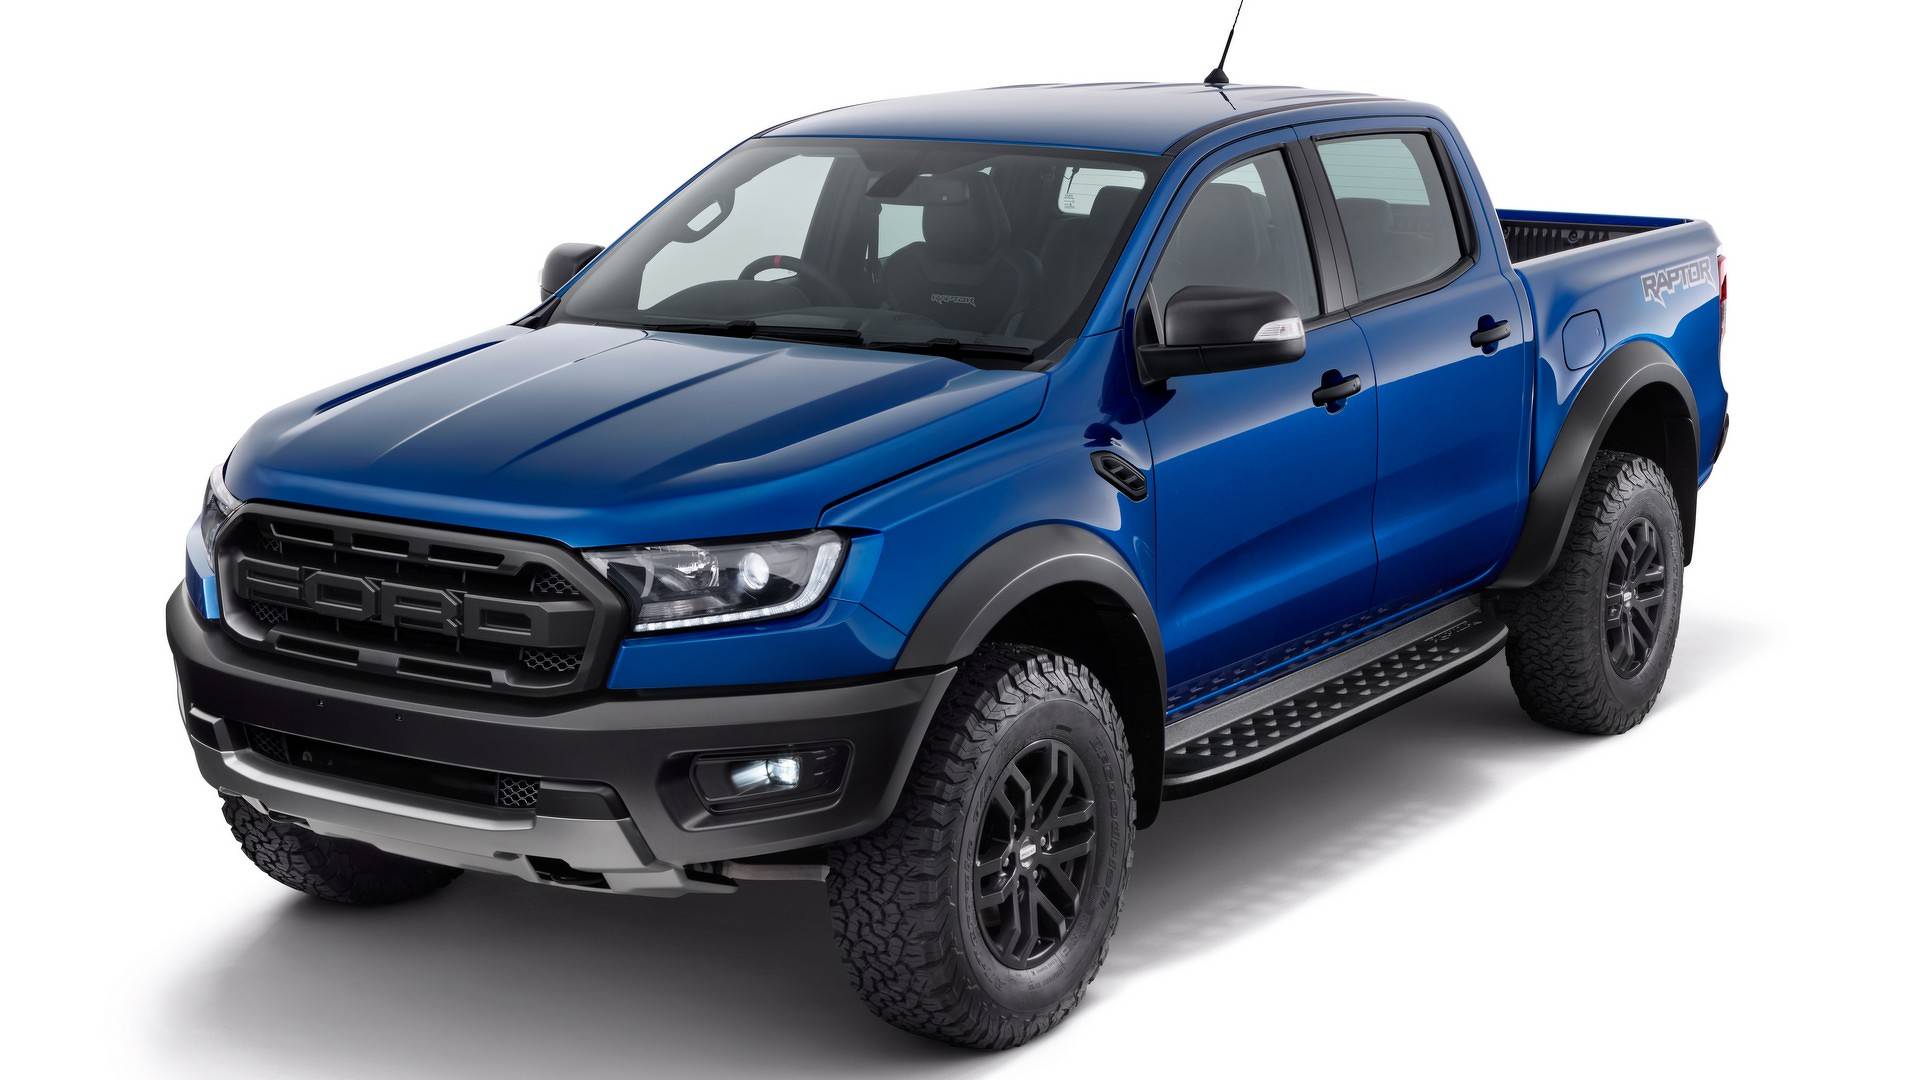 Vì sao Ford chọn động cơ 04 xy-lanh 2.0L cho Ranger Raptor 2018? - 1